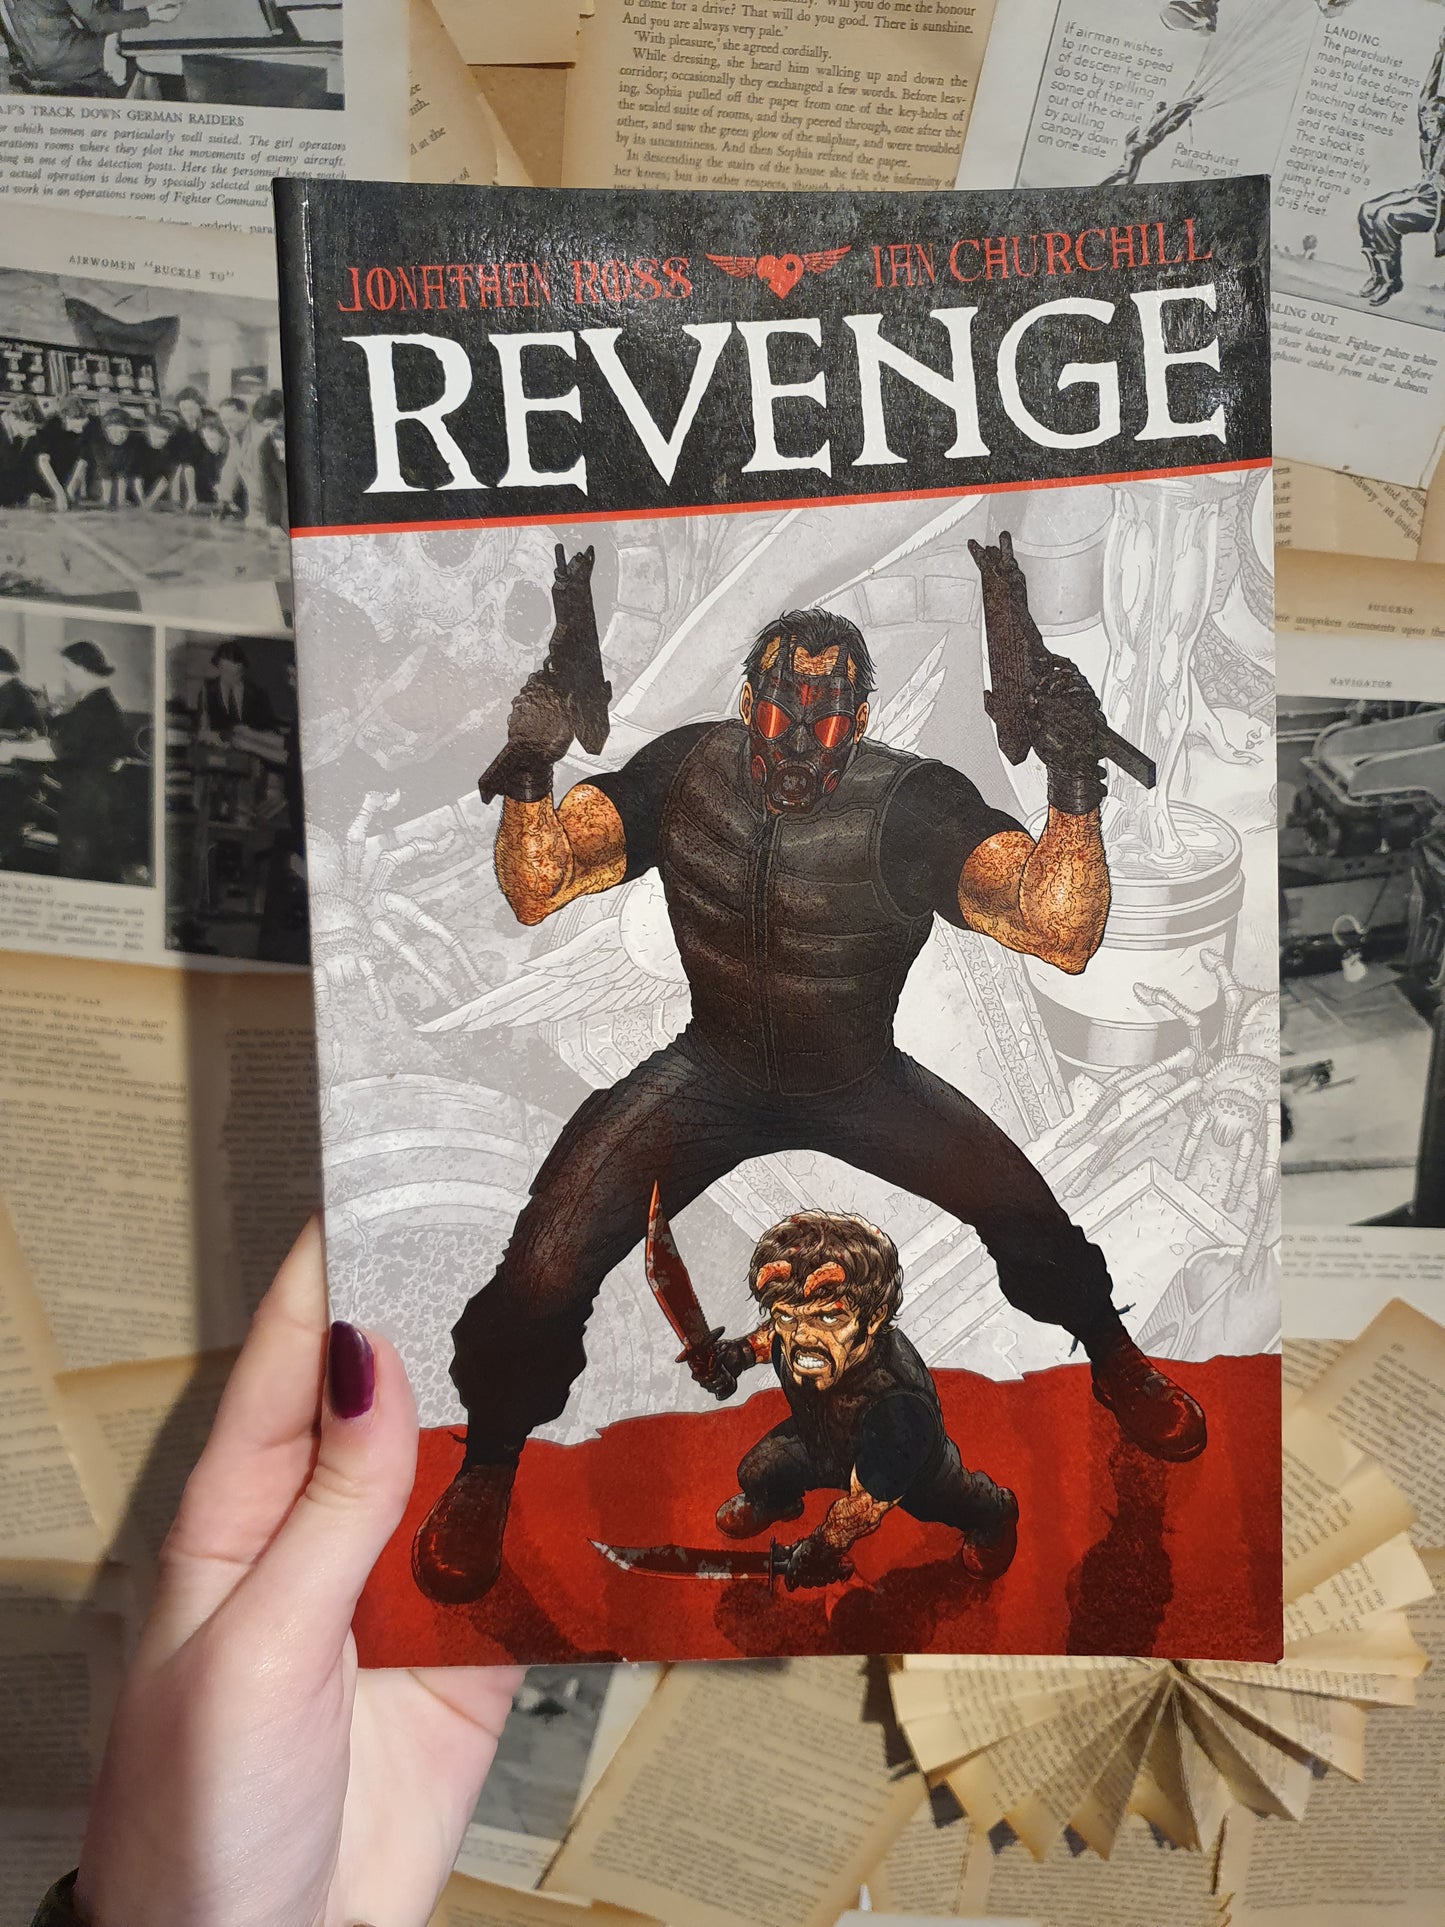 Revenge by Jonathan Ross & Ian Churchill (2015)